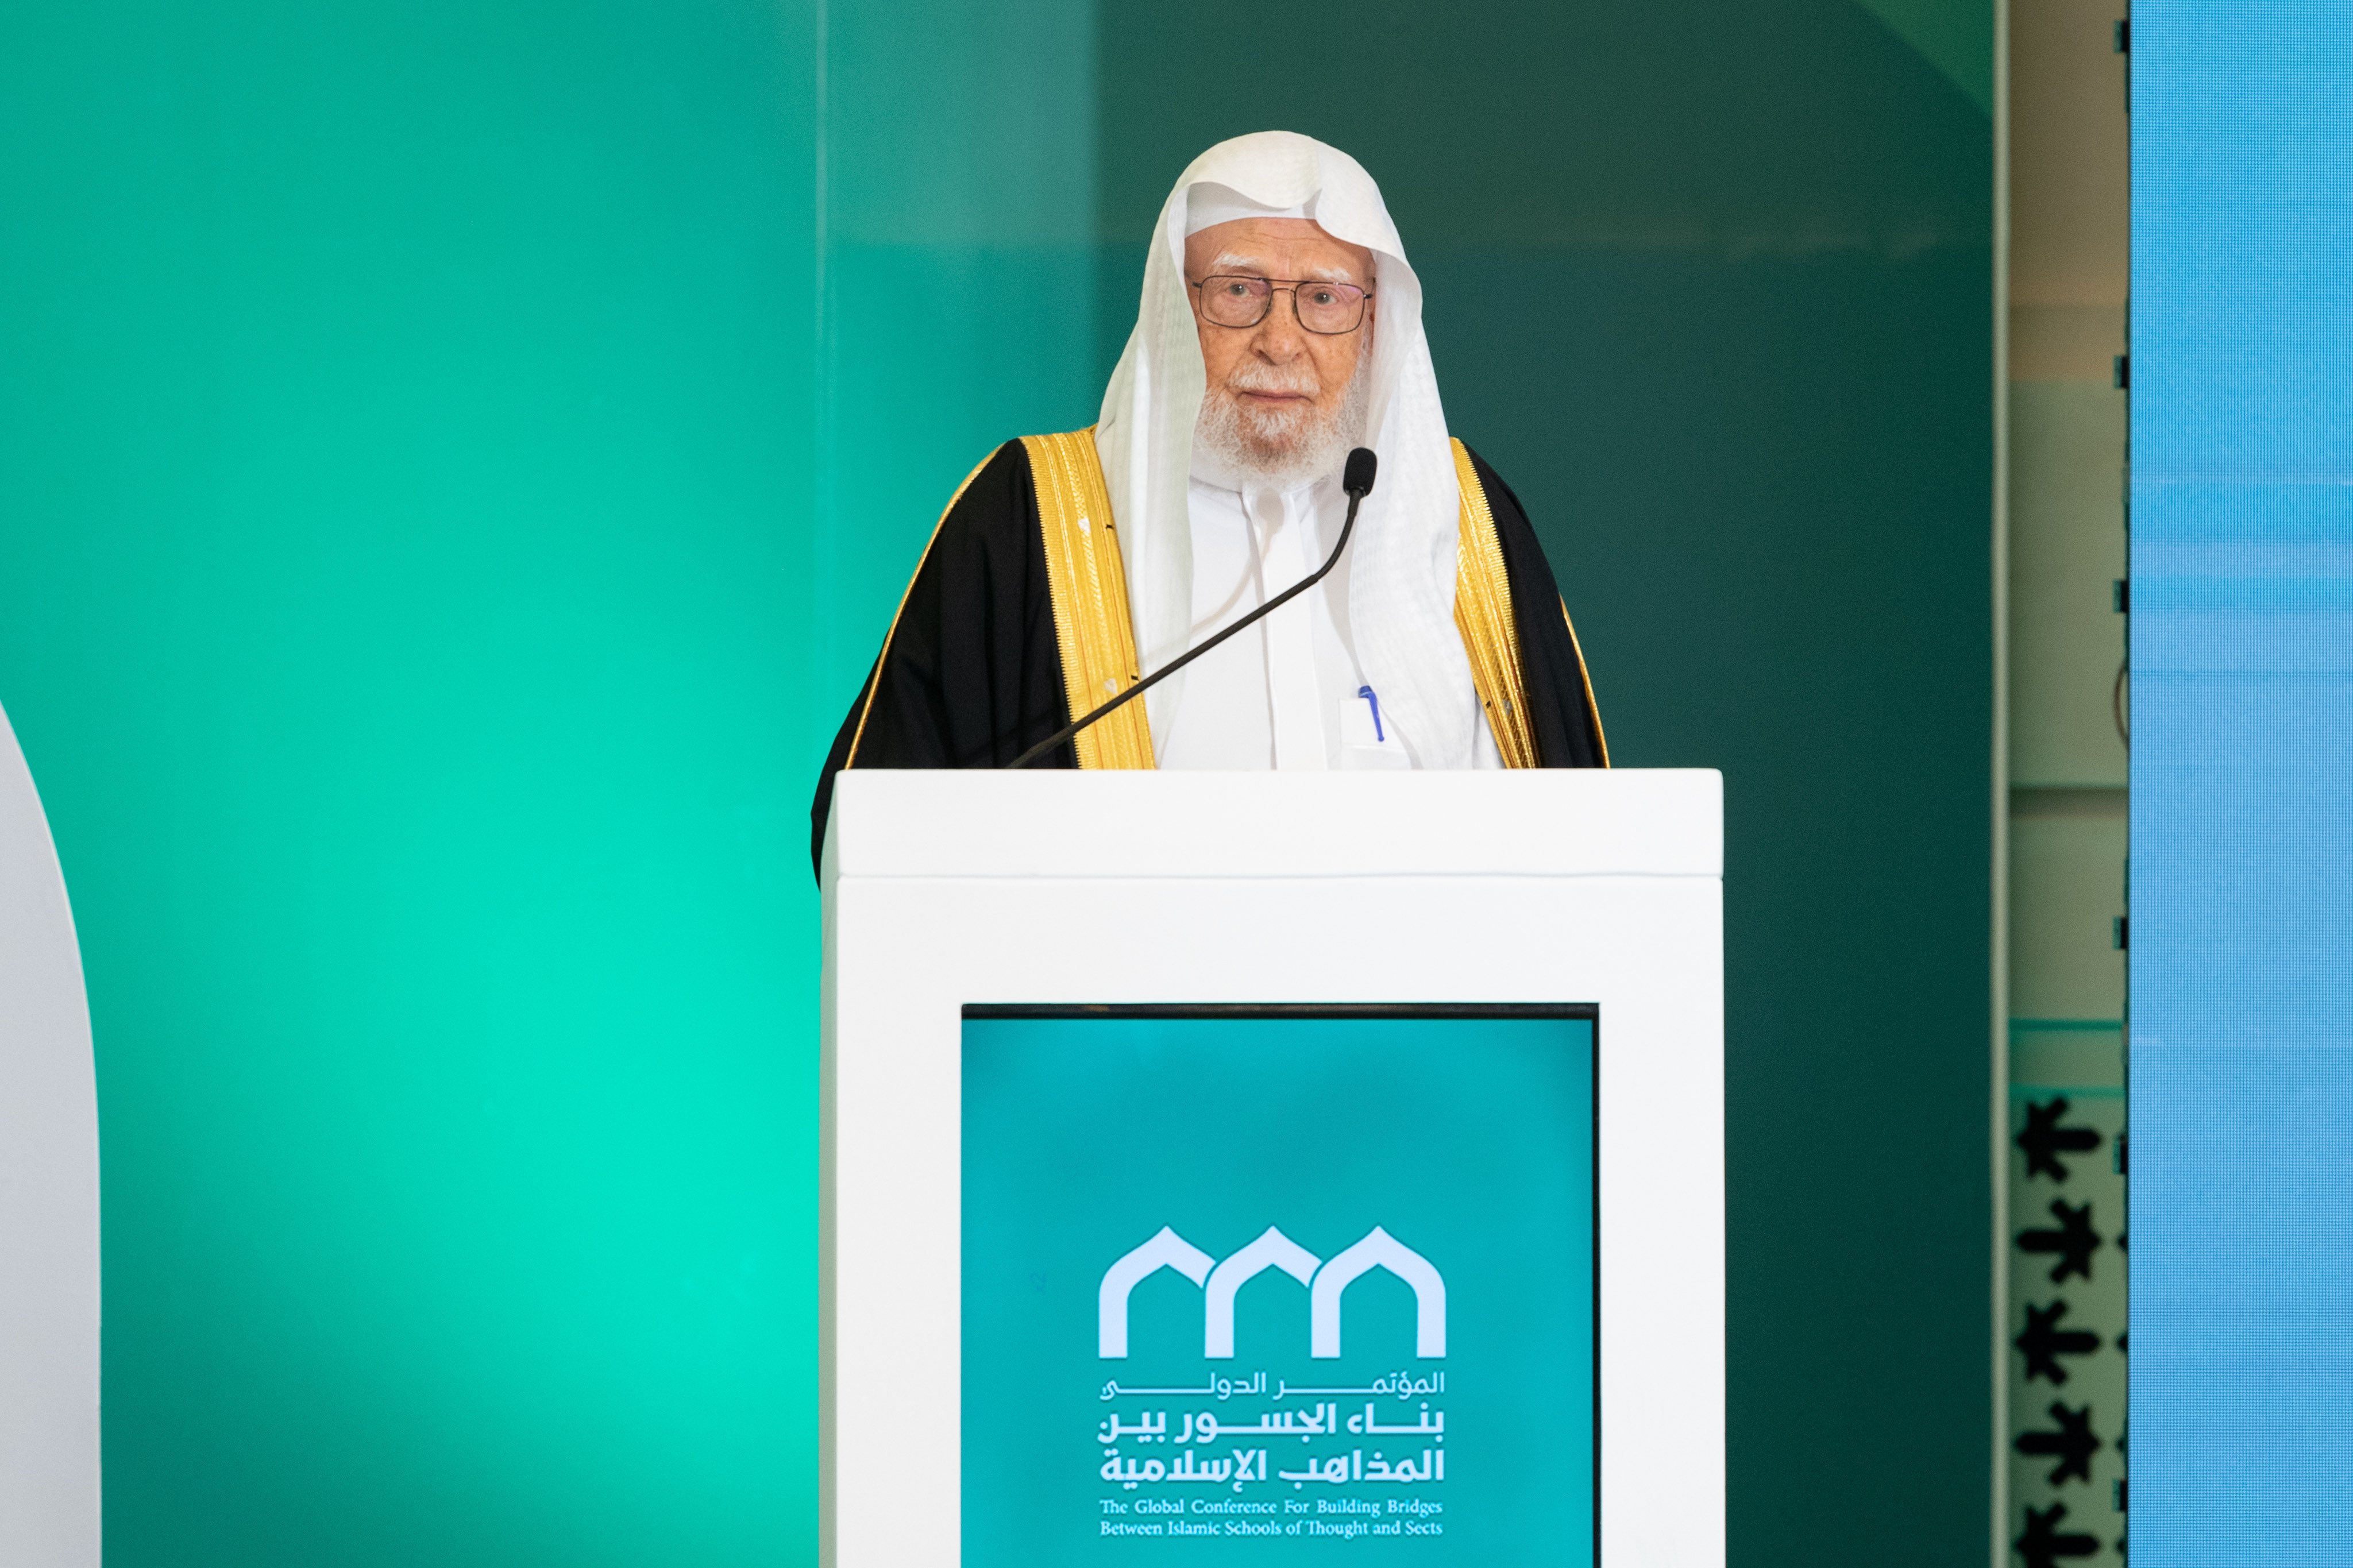 Yang Mulia Syekh Dr. Abdullah bin Abdulmohsen Al Turki, anggota Dewan Ulama Senior, dan Penasihat di Dewan Kerajaan Arab Saudi, dalam pidatonya pada sesi penutupan konferensi: “Membangun Jembatan Antar Mazhab Islam”